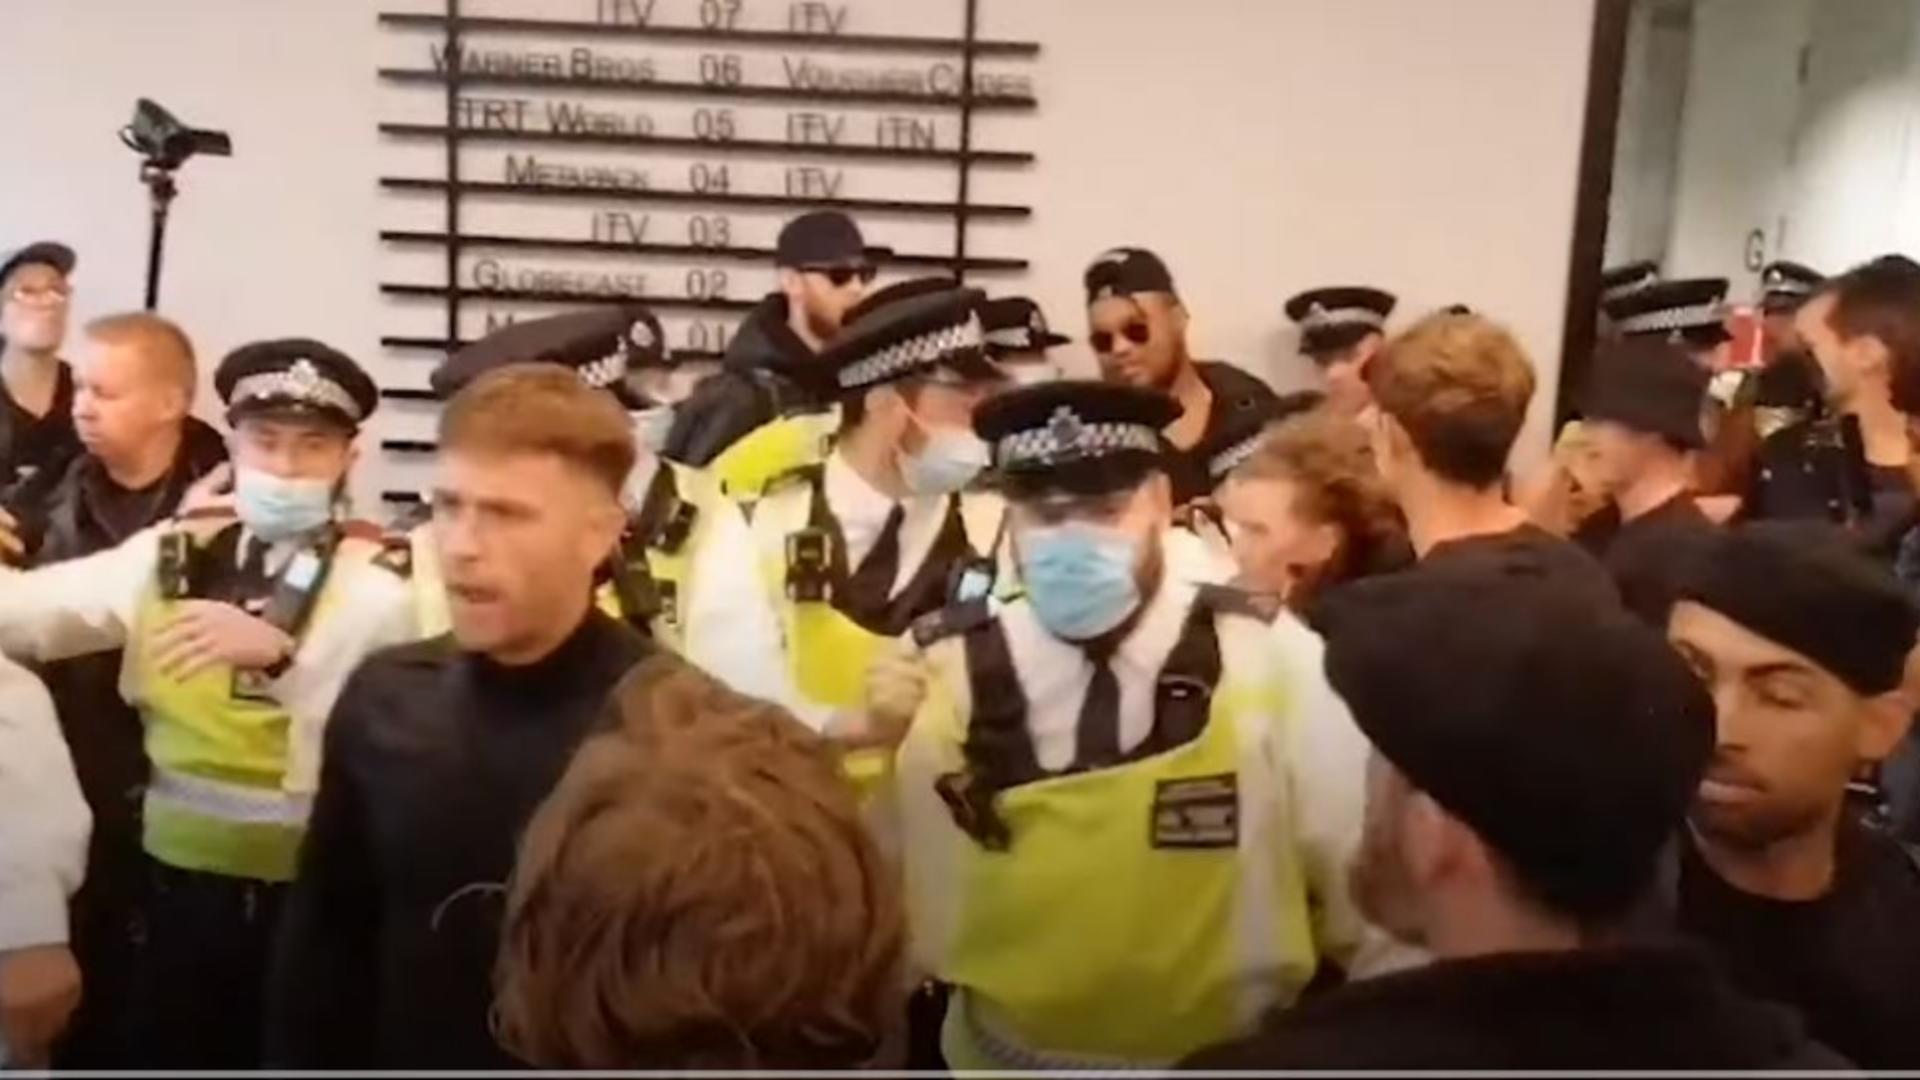 Antivacciniștii iau cu asalt sediul unei televiziuni din Londra. Foto/Captură video